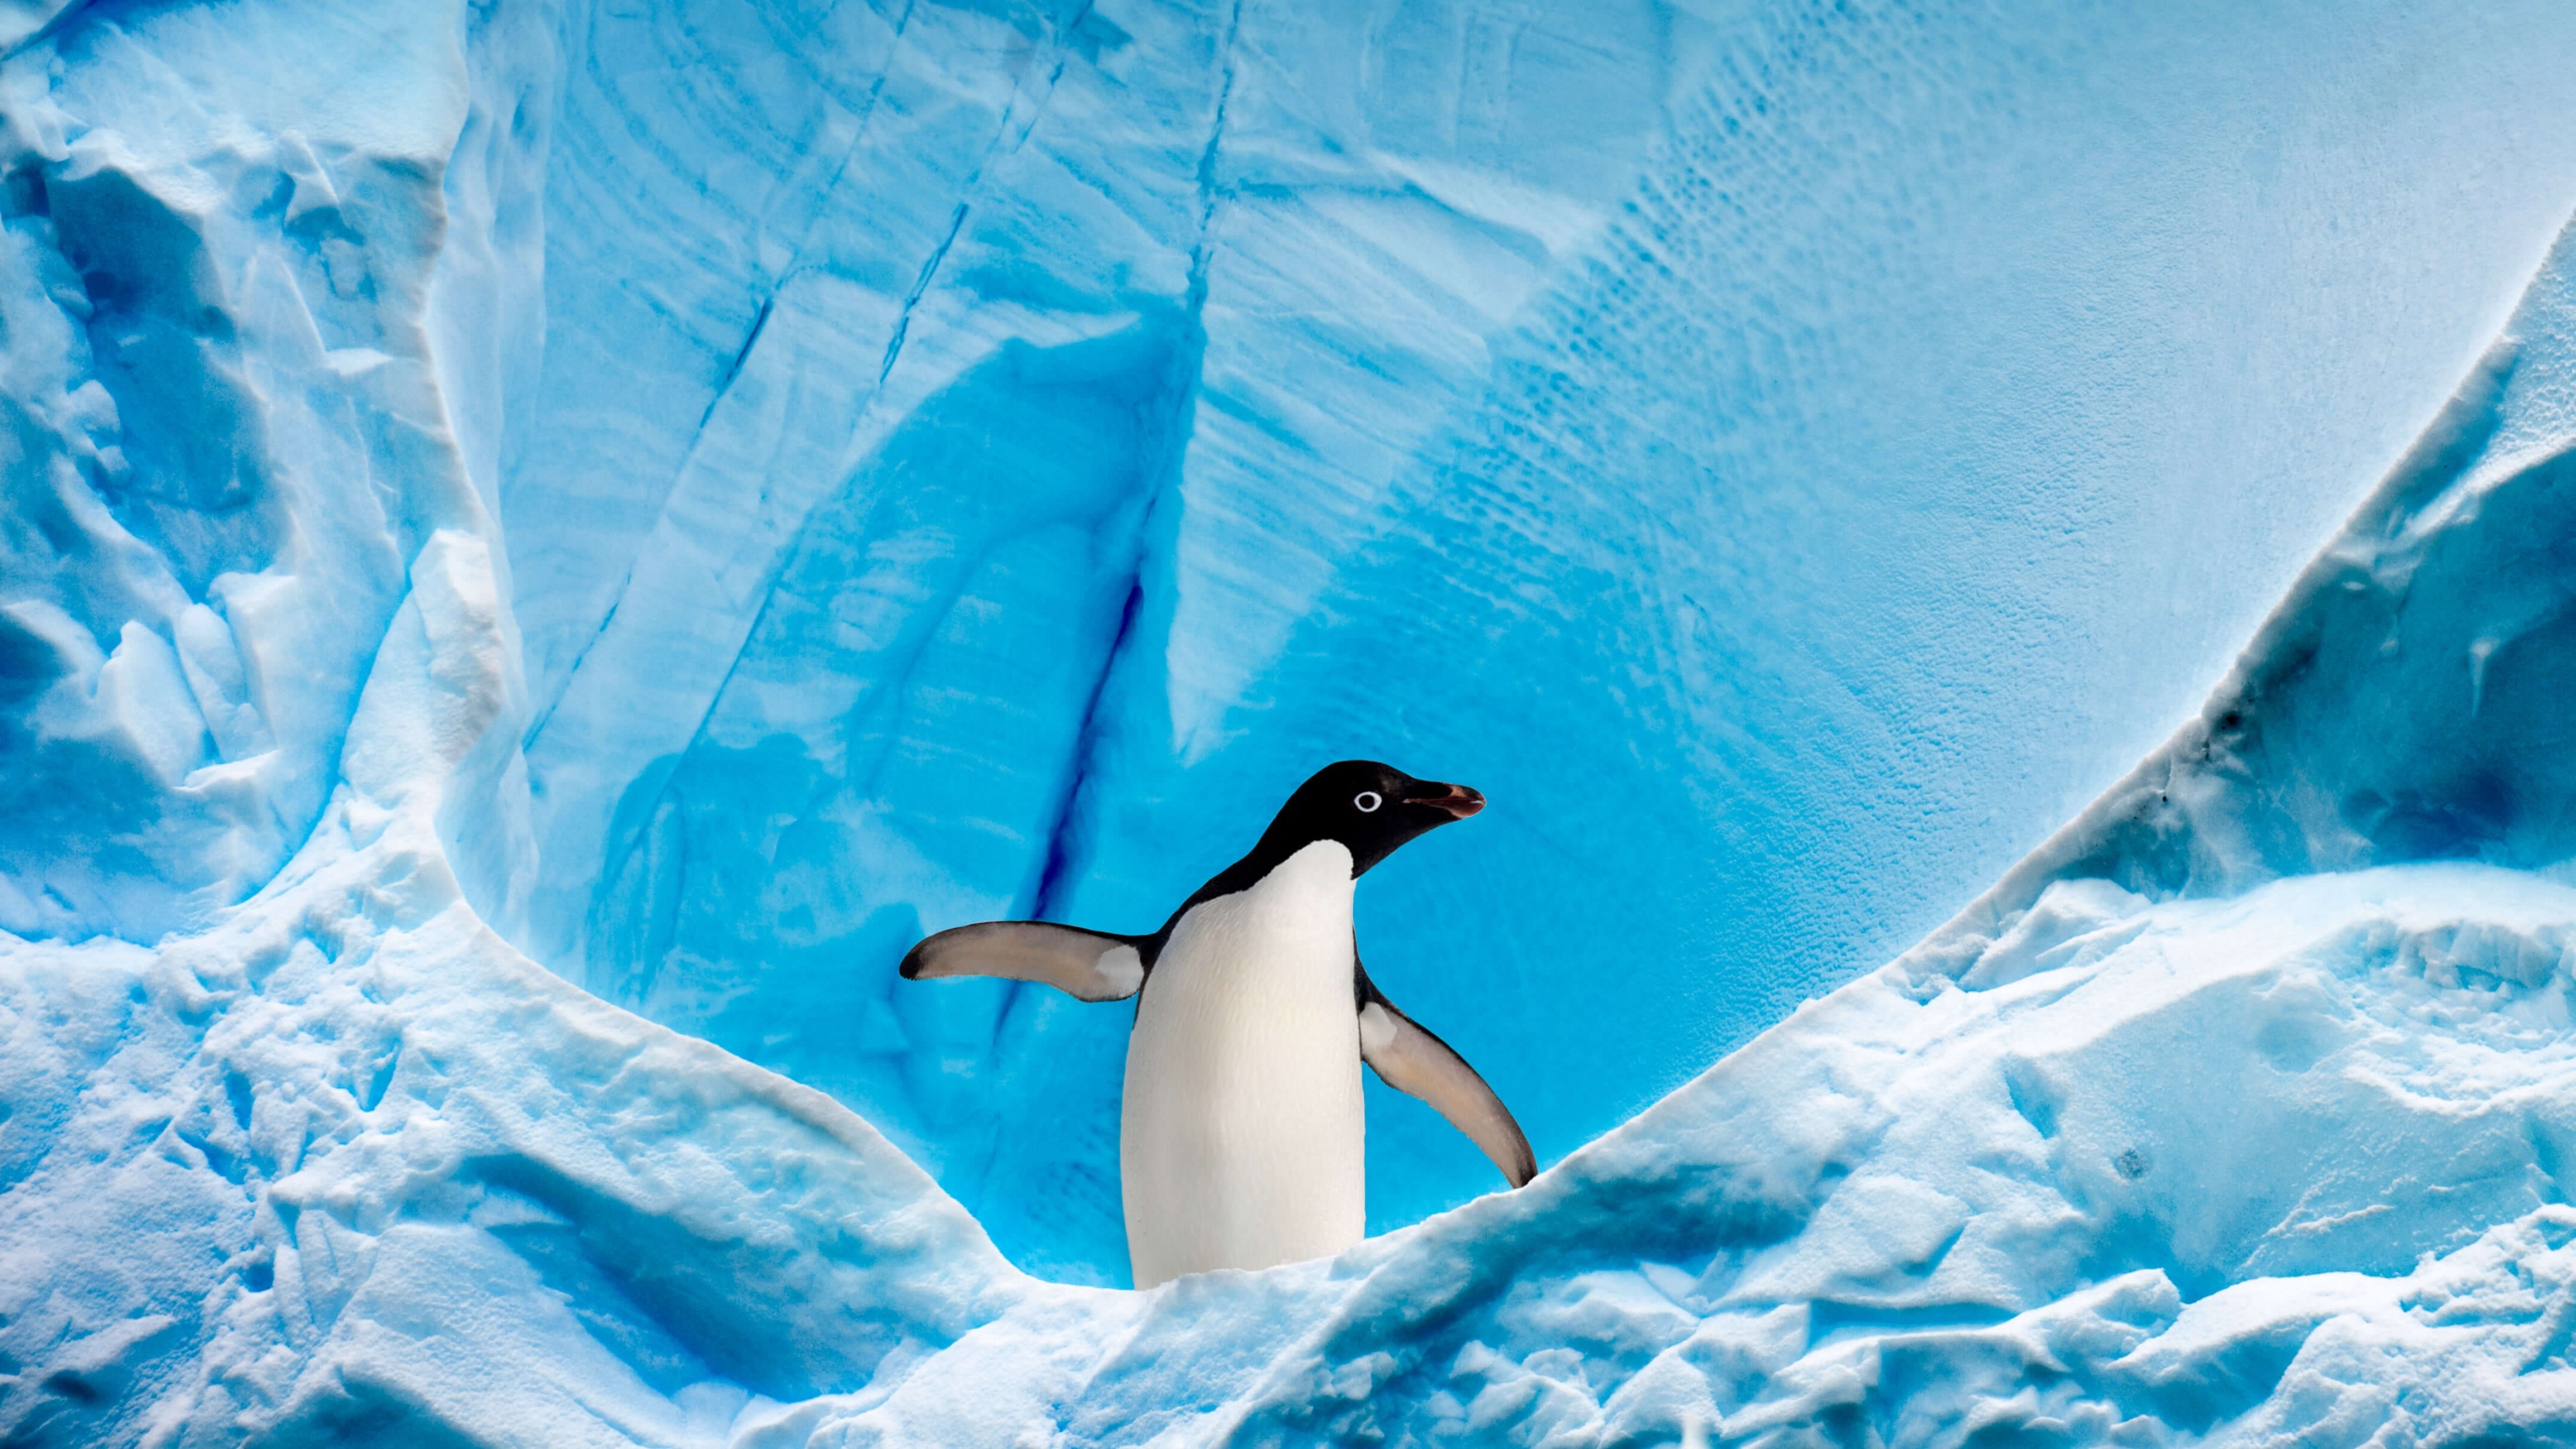 Antarctica Travels, Arctic wildlife, Penguins in action, Frozen habitat, 3840x2160 4K Desktop